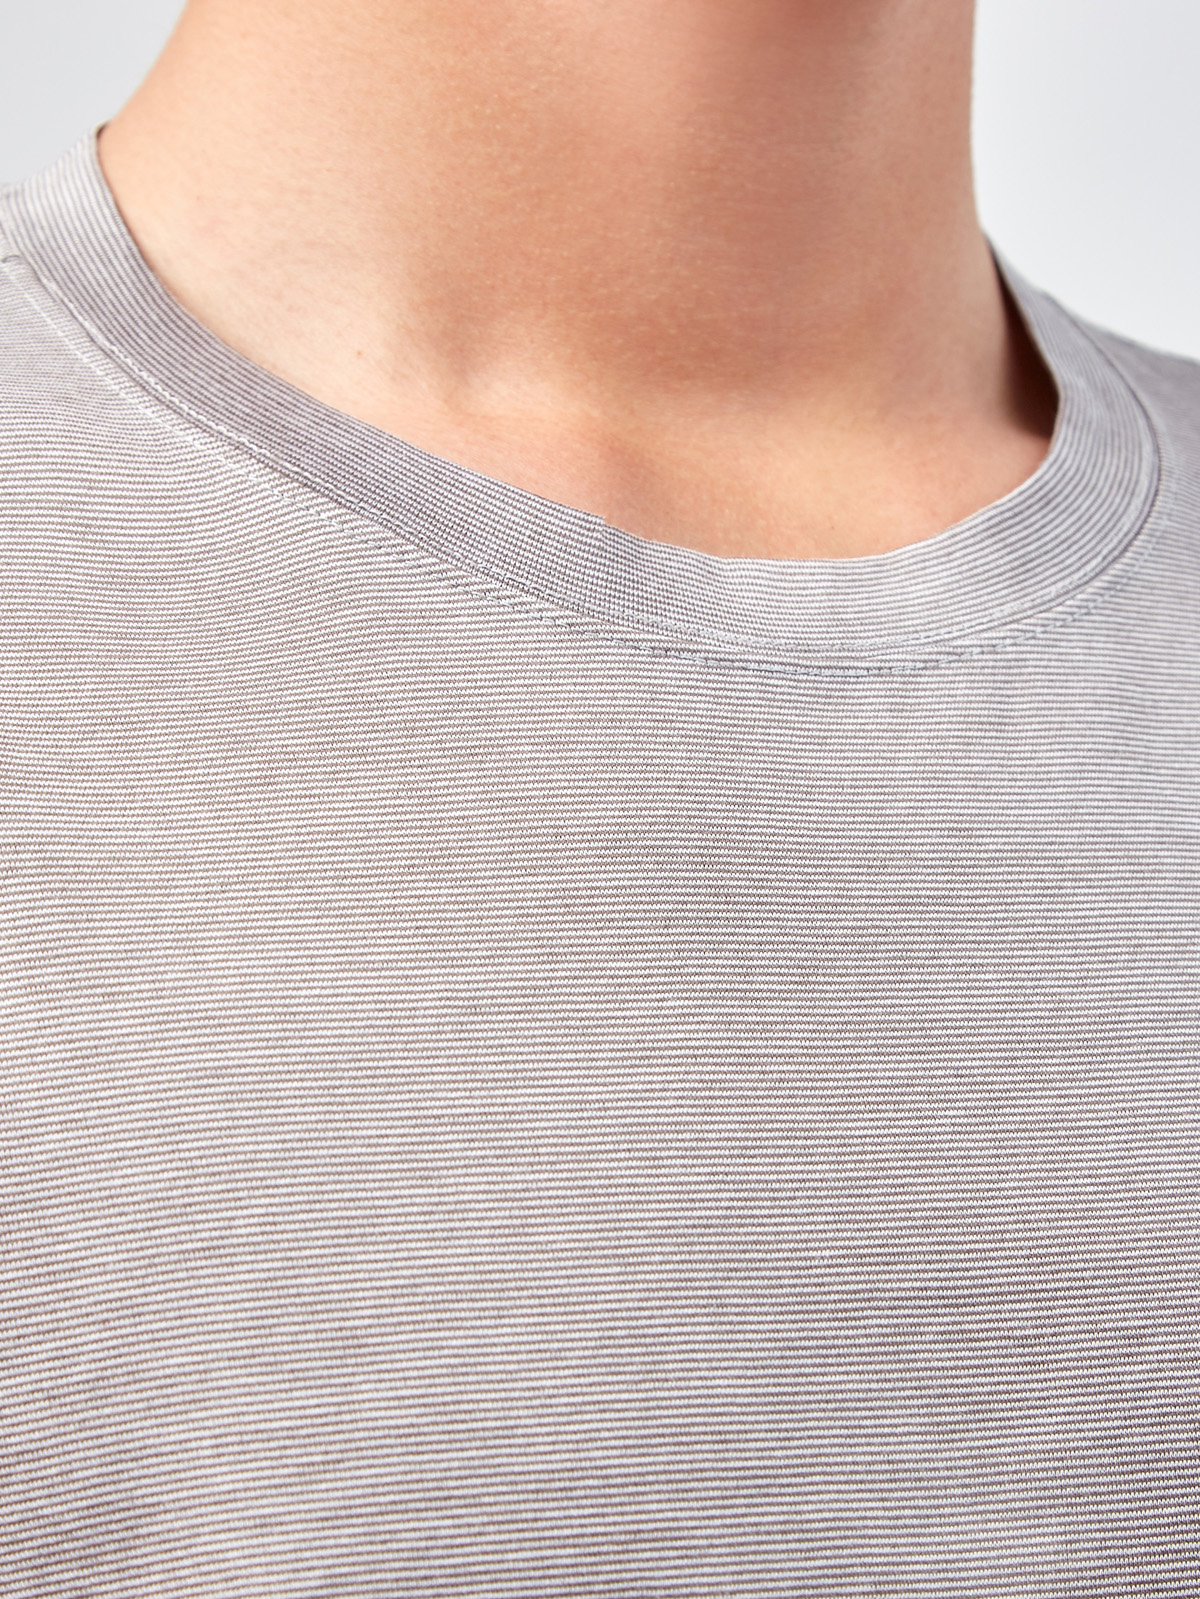 Хлопковая футболка с микро-принтом в тонкую полоску GRAN SASSO, цвет серый, размер 48;52;54;56;50 - фото 5